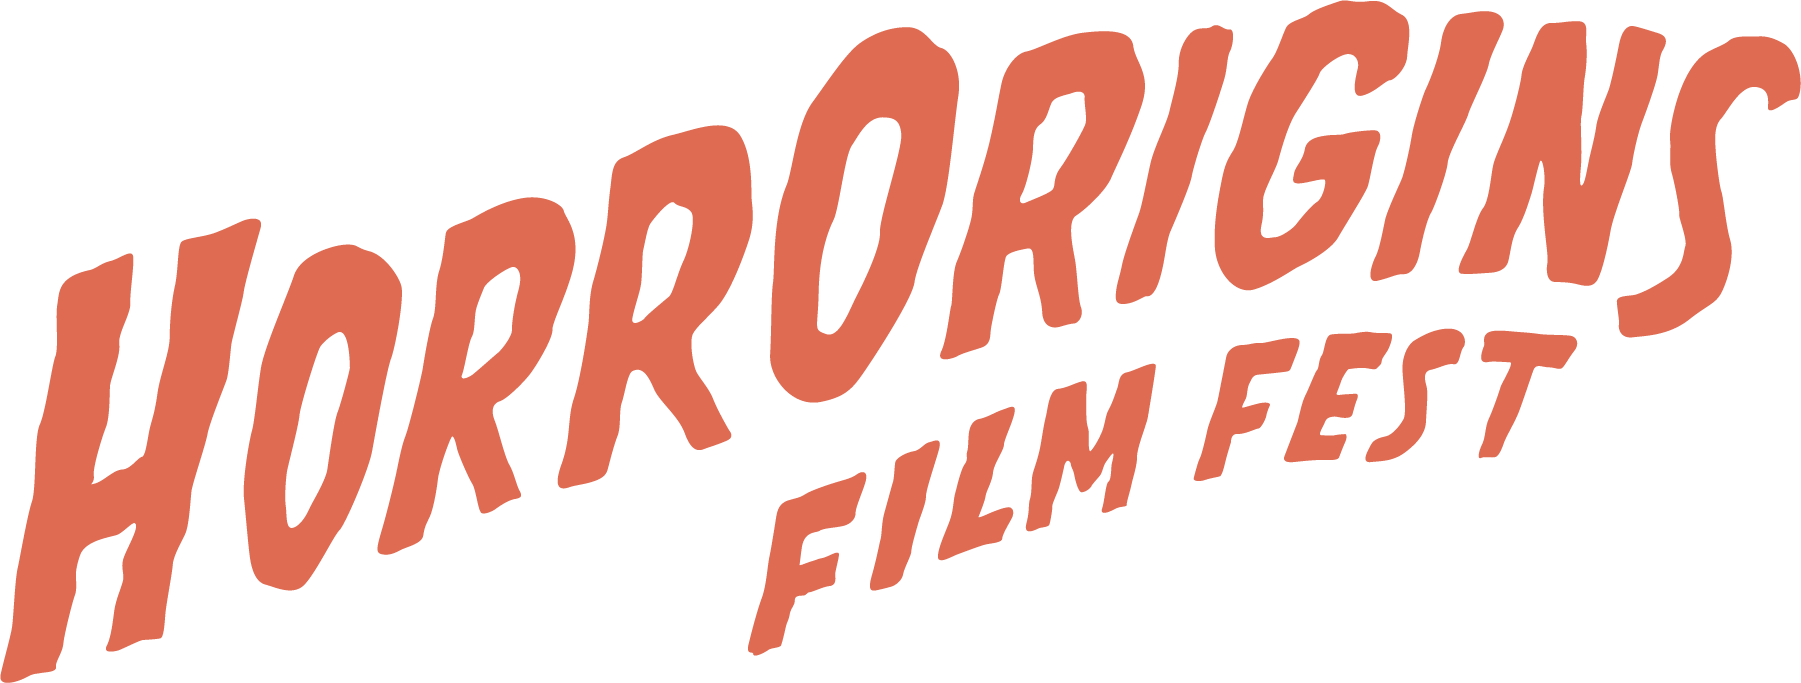 HorrOrigins logo